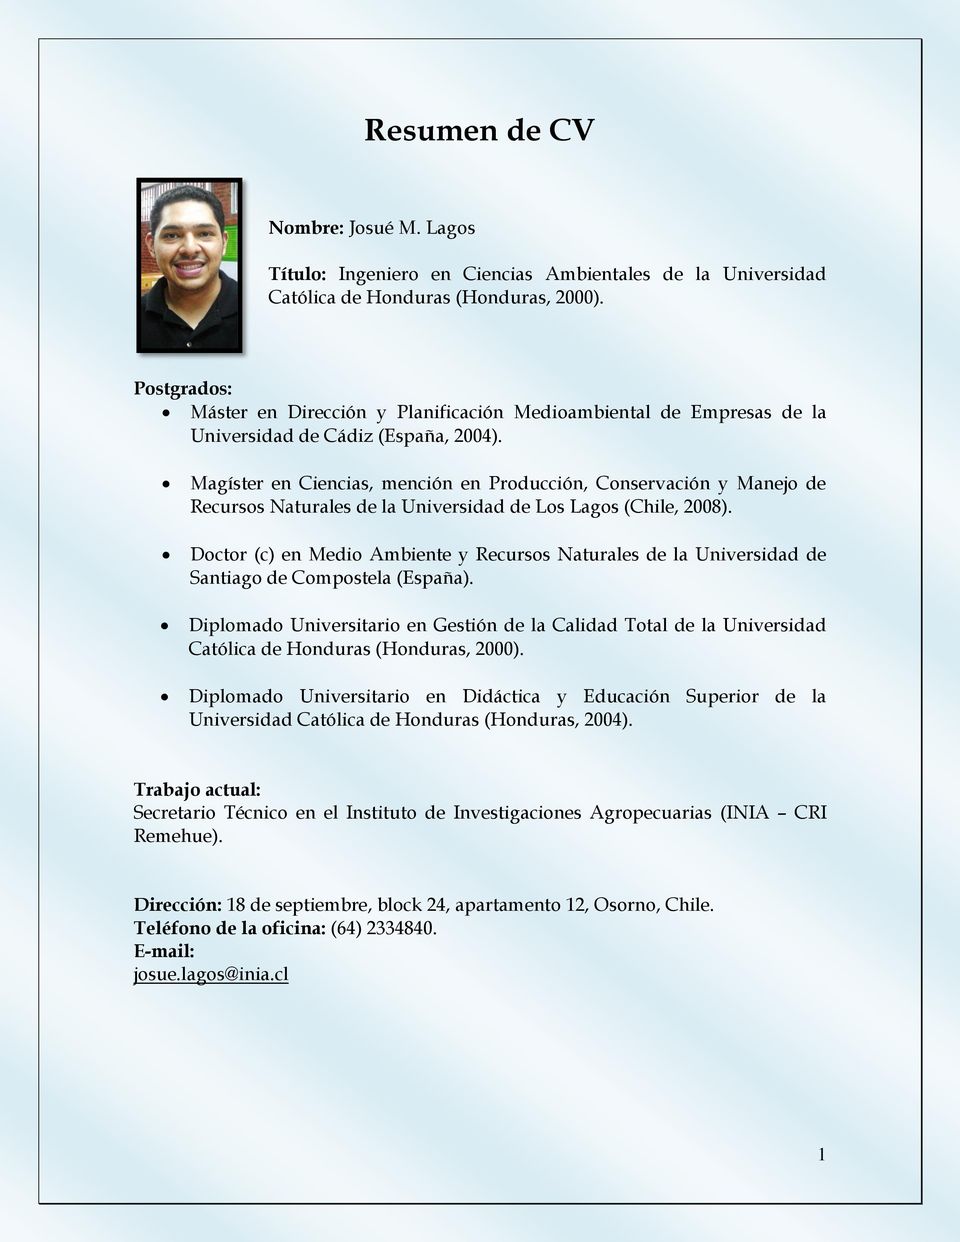 Magíster en Ciencias, mención en Producción, Conservación y Manejo de Recursos Naturales de la Universidad de Los Lagos (Chile, 2008).